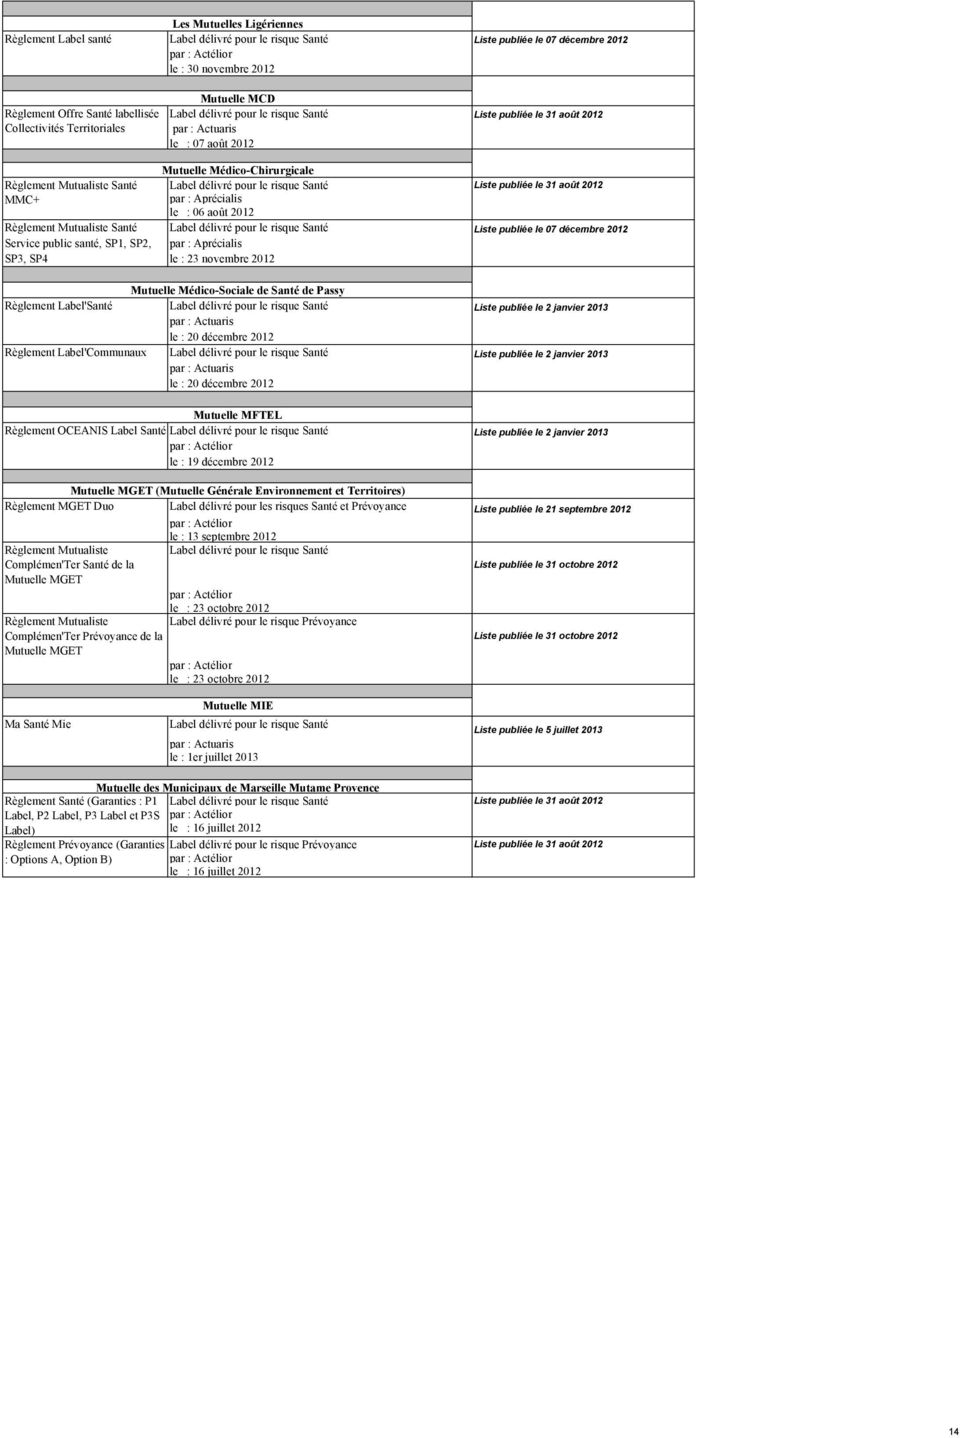 Aprécialis SP3, SP4 le : 23 novembre 2012 Mutuelle Médico-Sociale de Santé de Passy Règlement Label'Santé Liste publiée le 2 janvier 2013 le : 20 décembre 2012 Règlement Label'Communaux Liste publiée